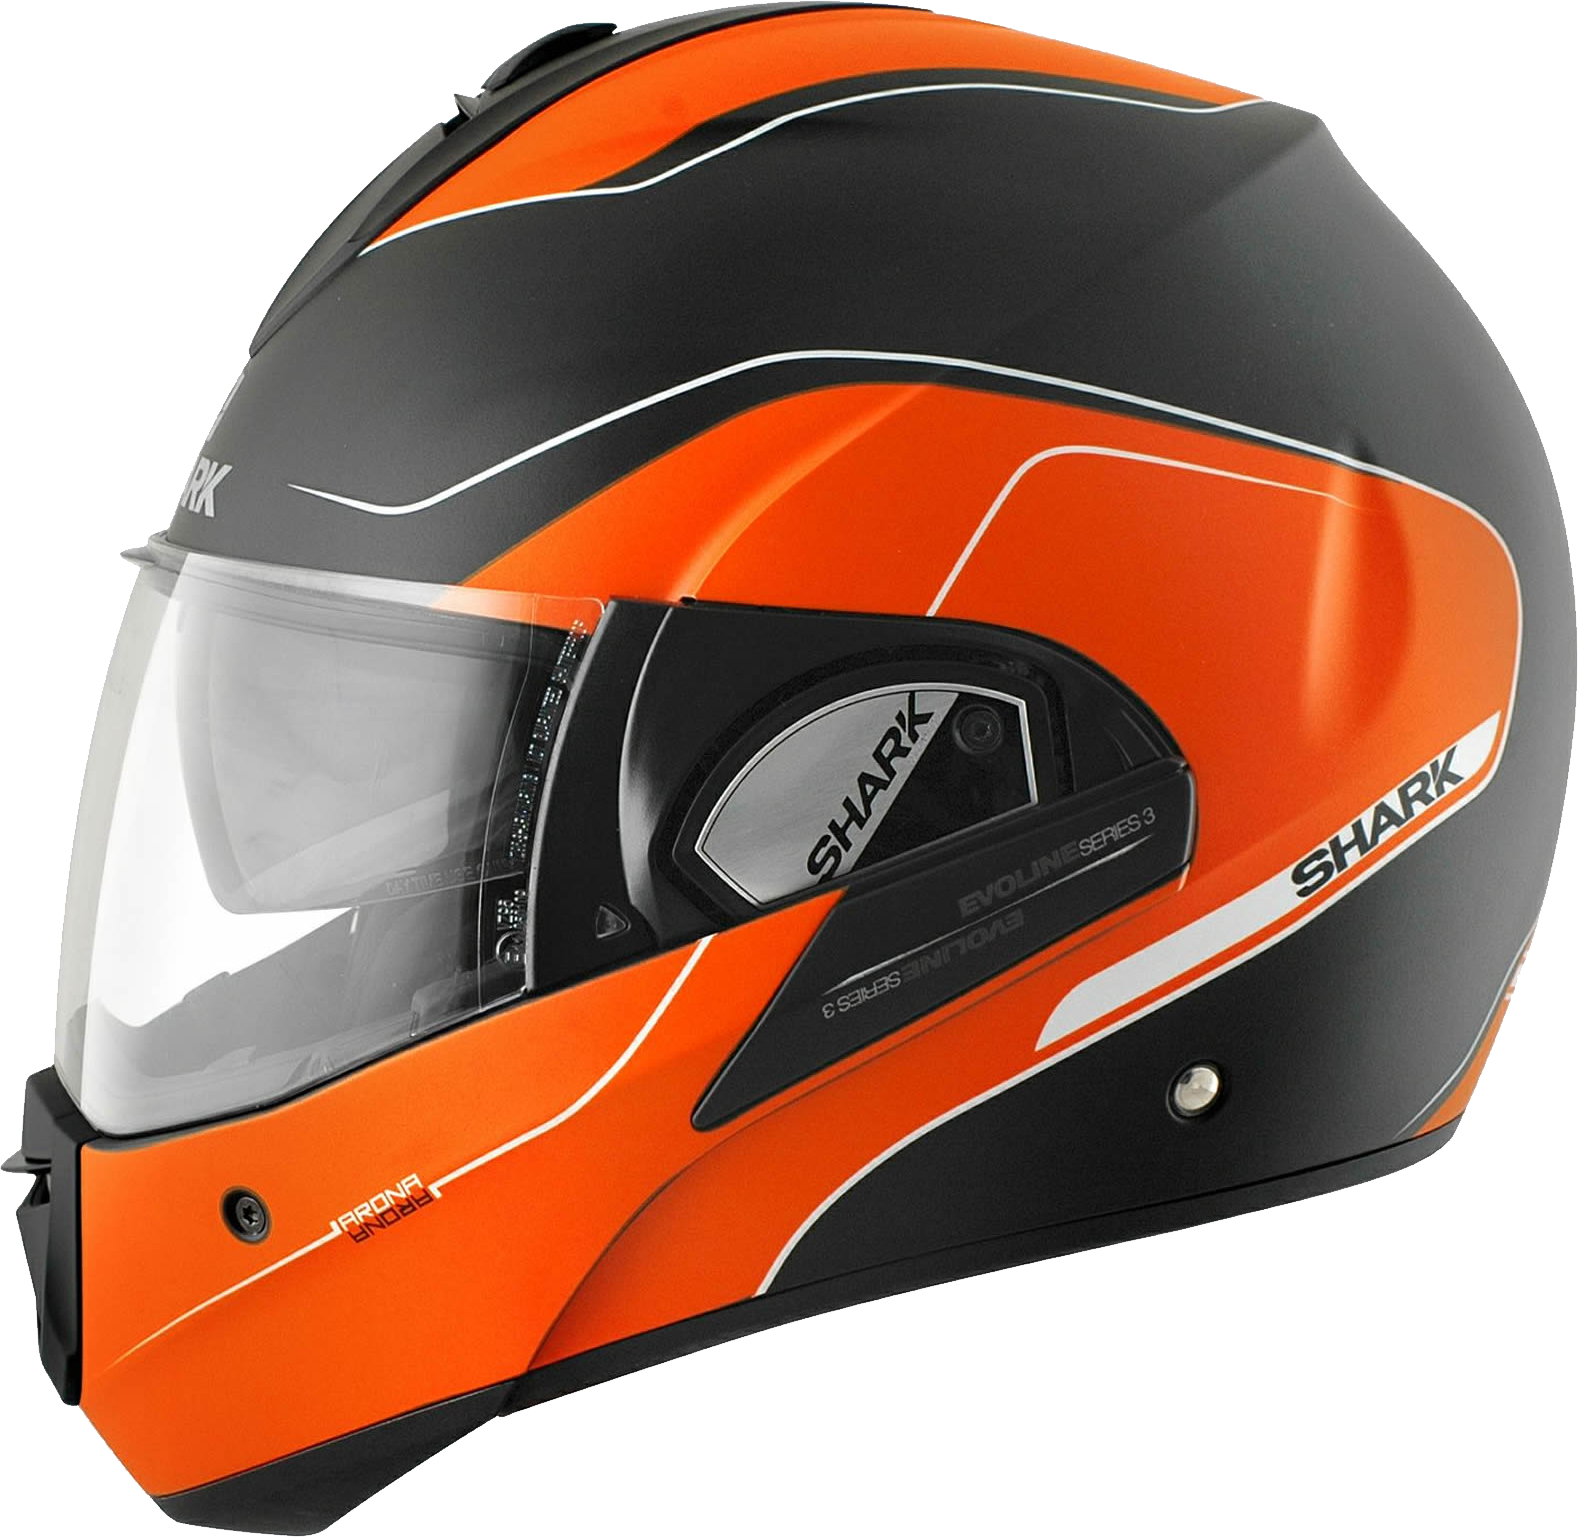 Motorcycle Helmet PNG Image